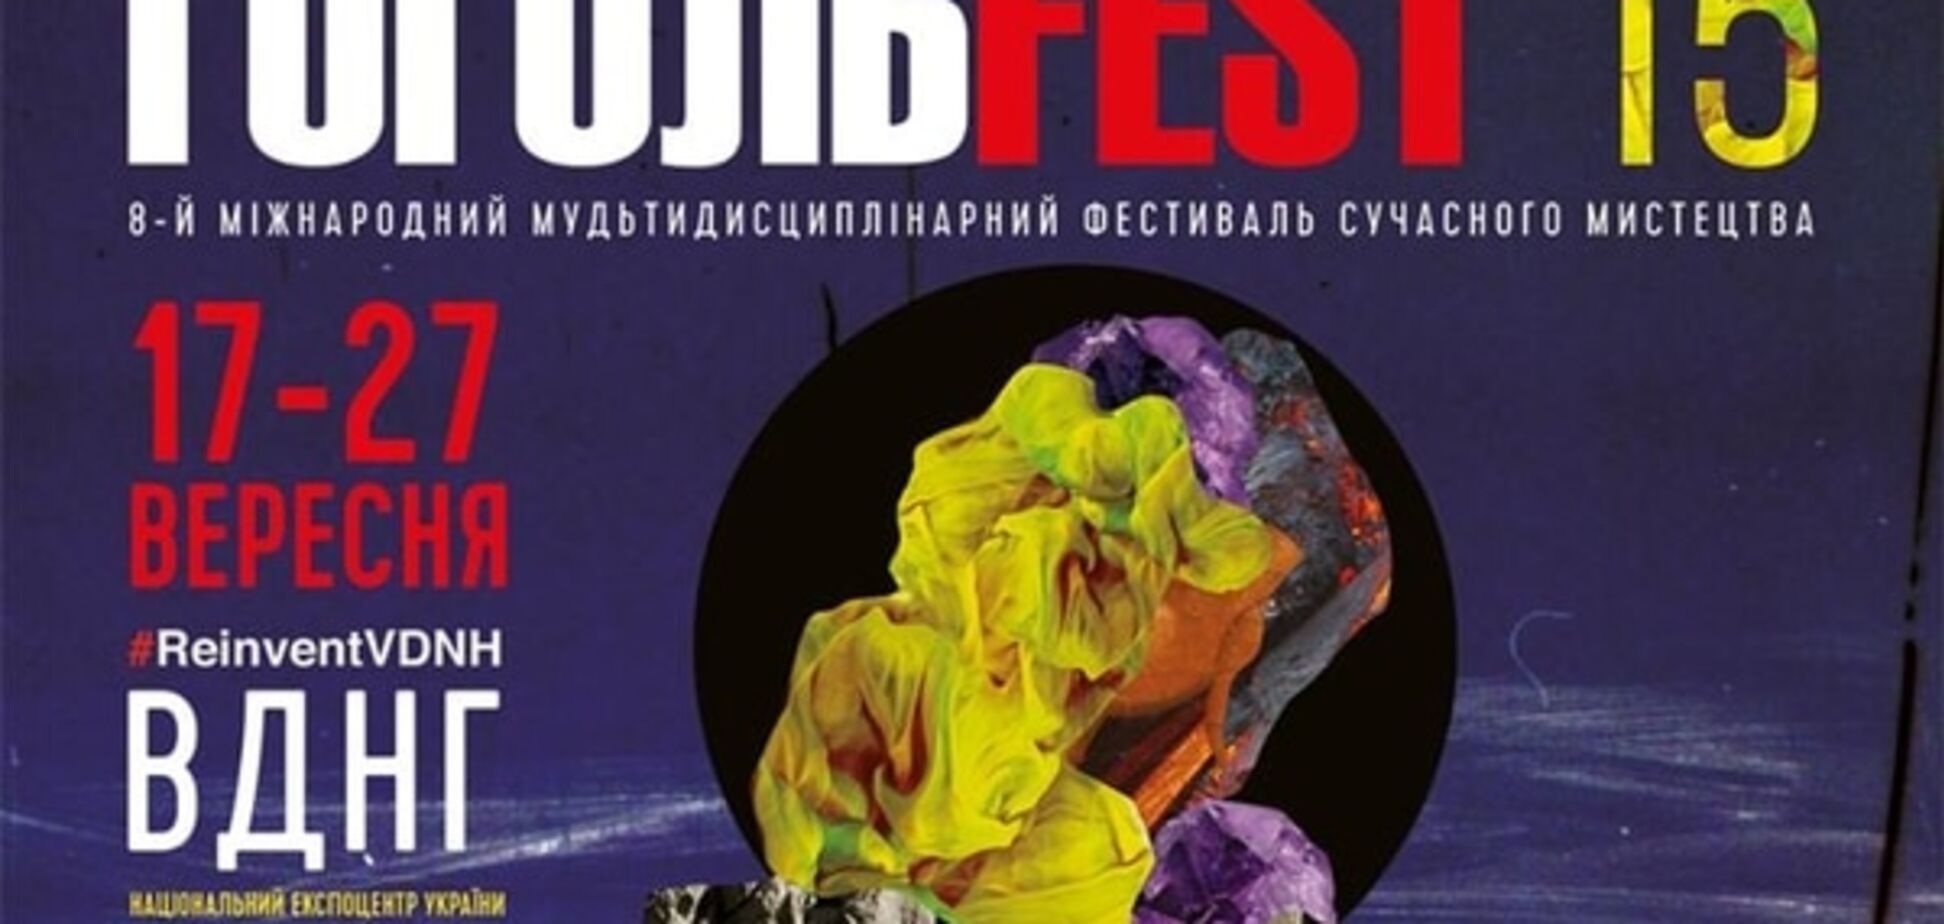 В Киеве пройдет фестиваль ГогольFest-2015